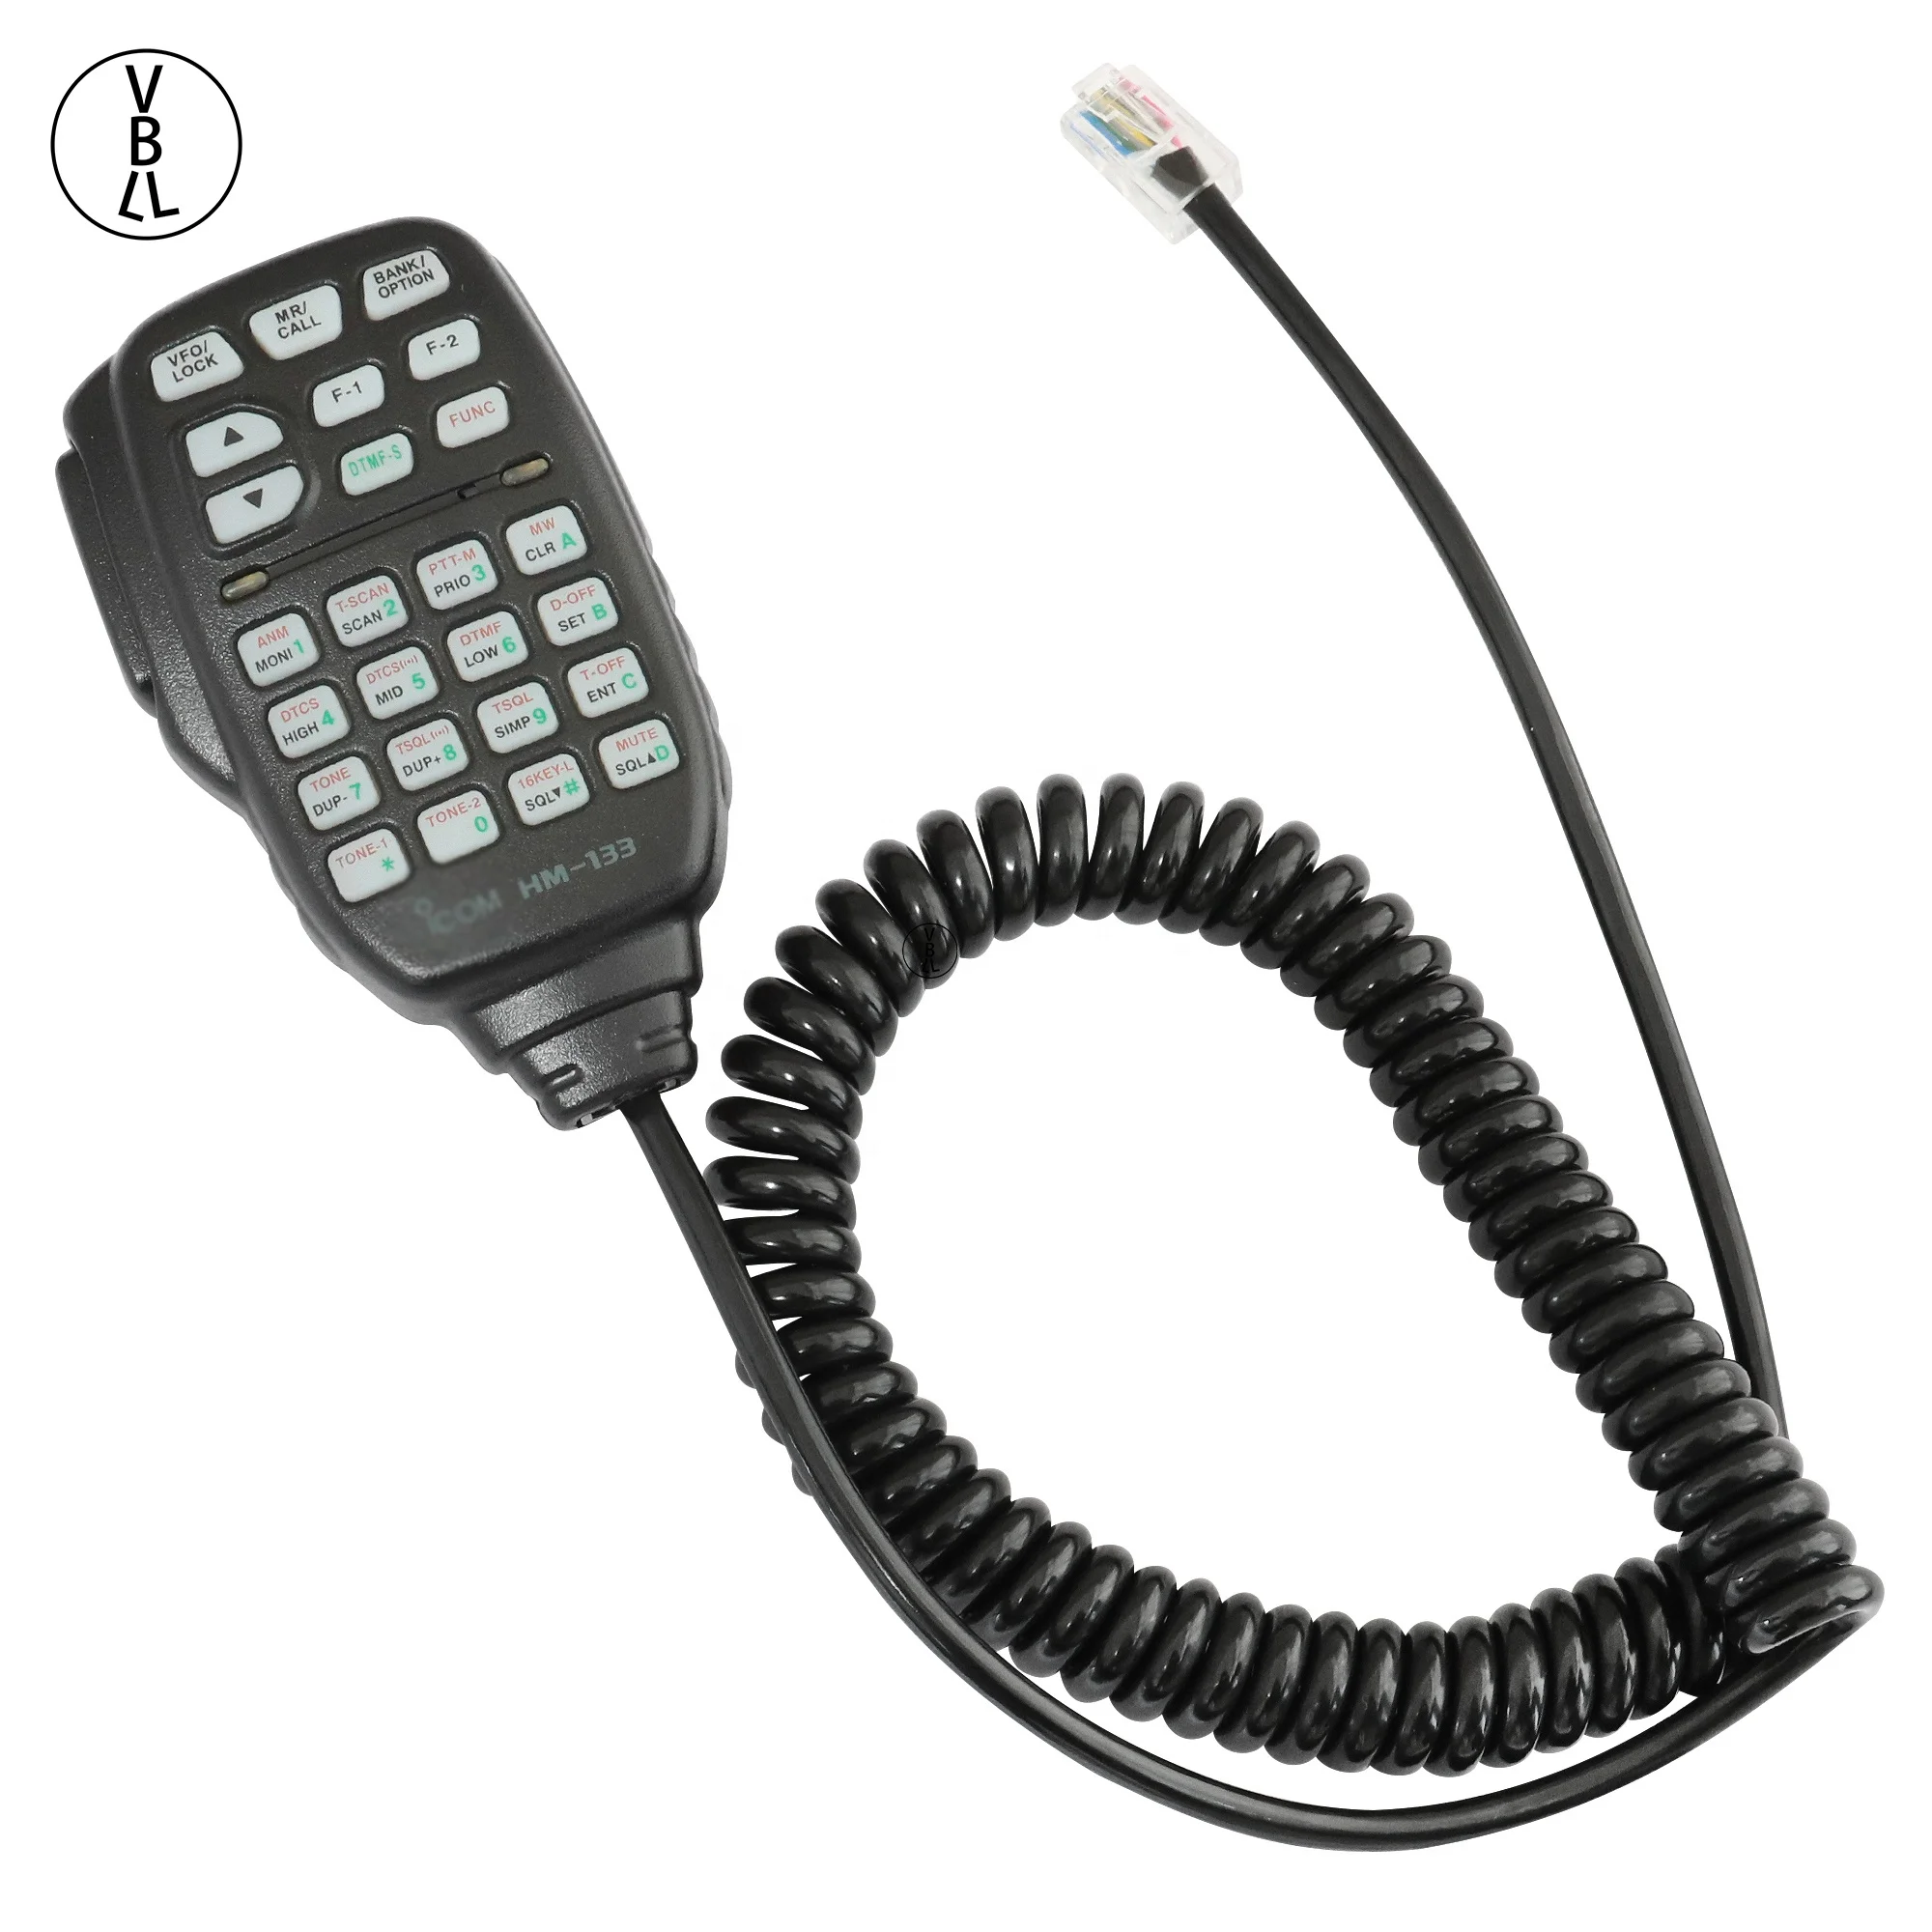 

HM-133V Handheld speaker microphone for mobile radio walkie talkie microphone, Black